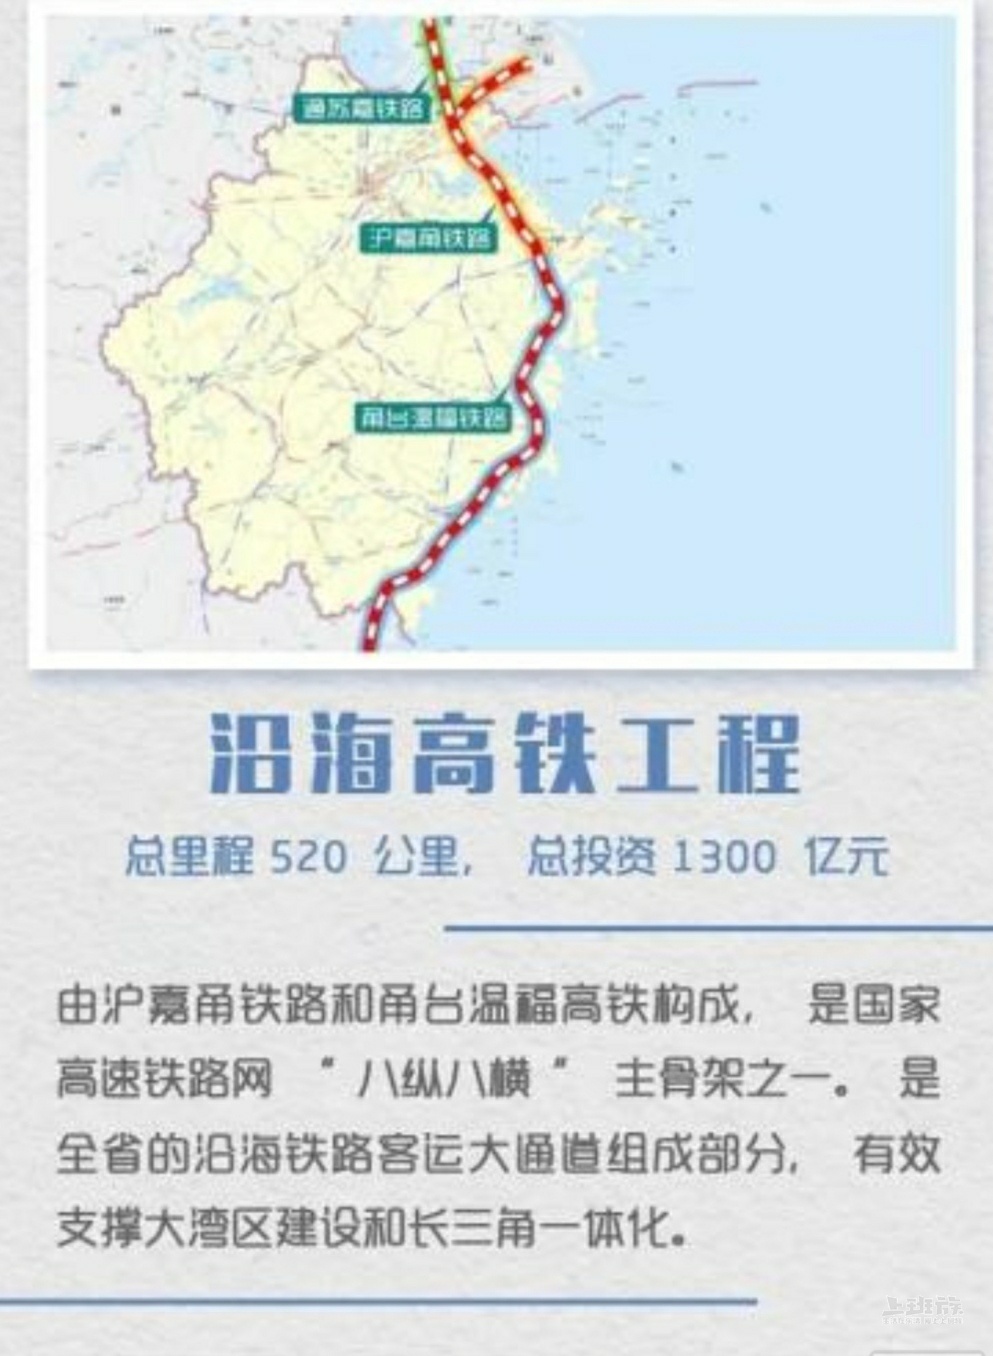 这条浙江沿海高铁,又称为甬台温福高铁,起自宁波,经台州,温州到福州